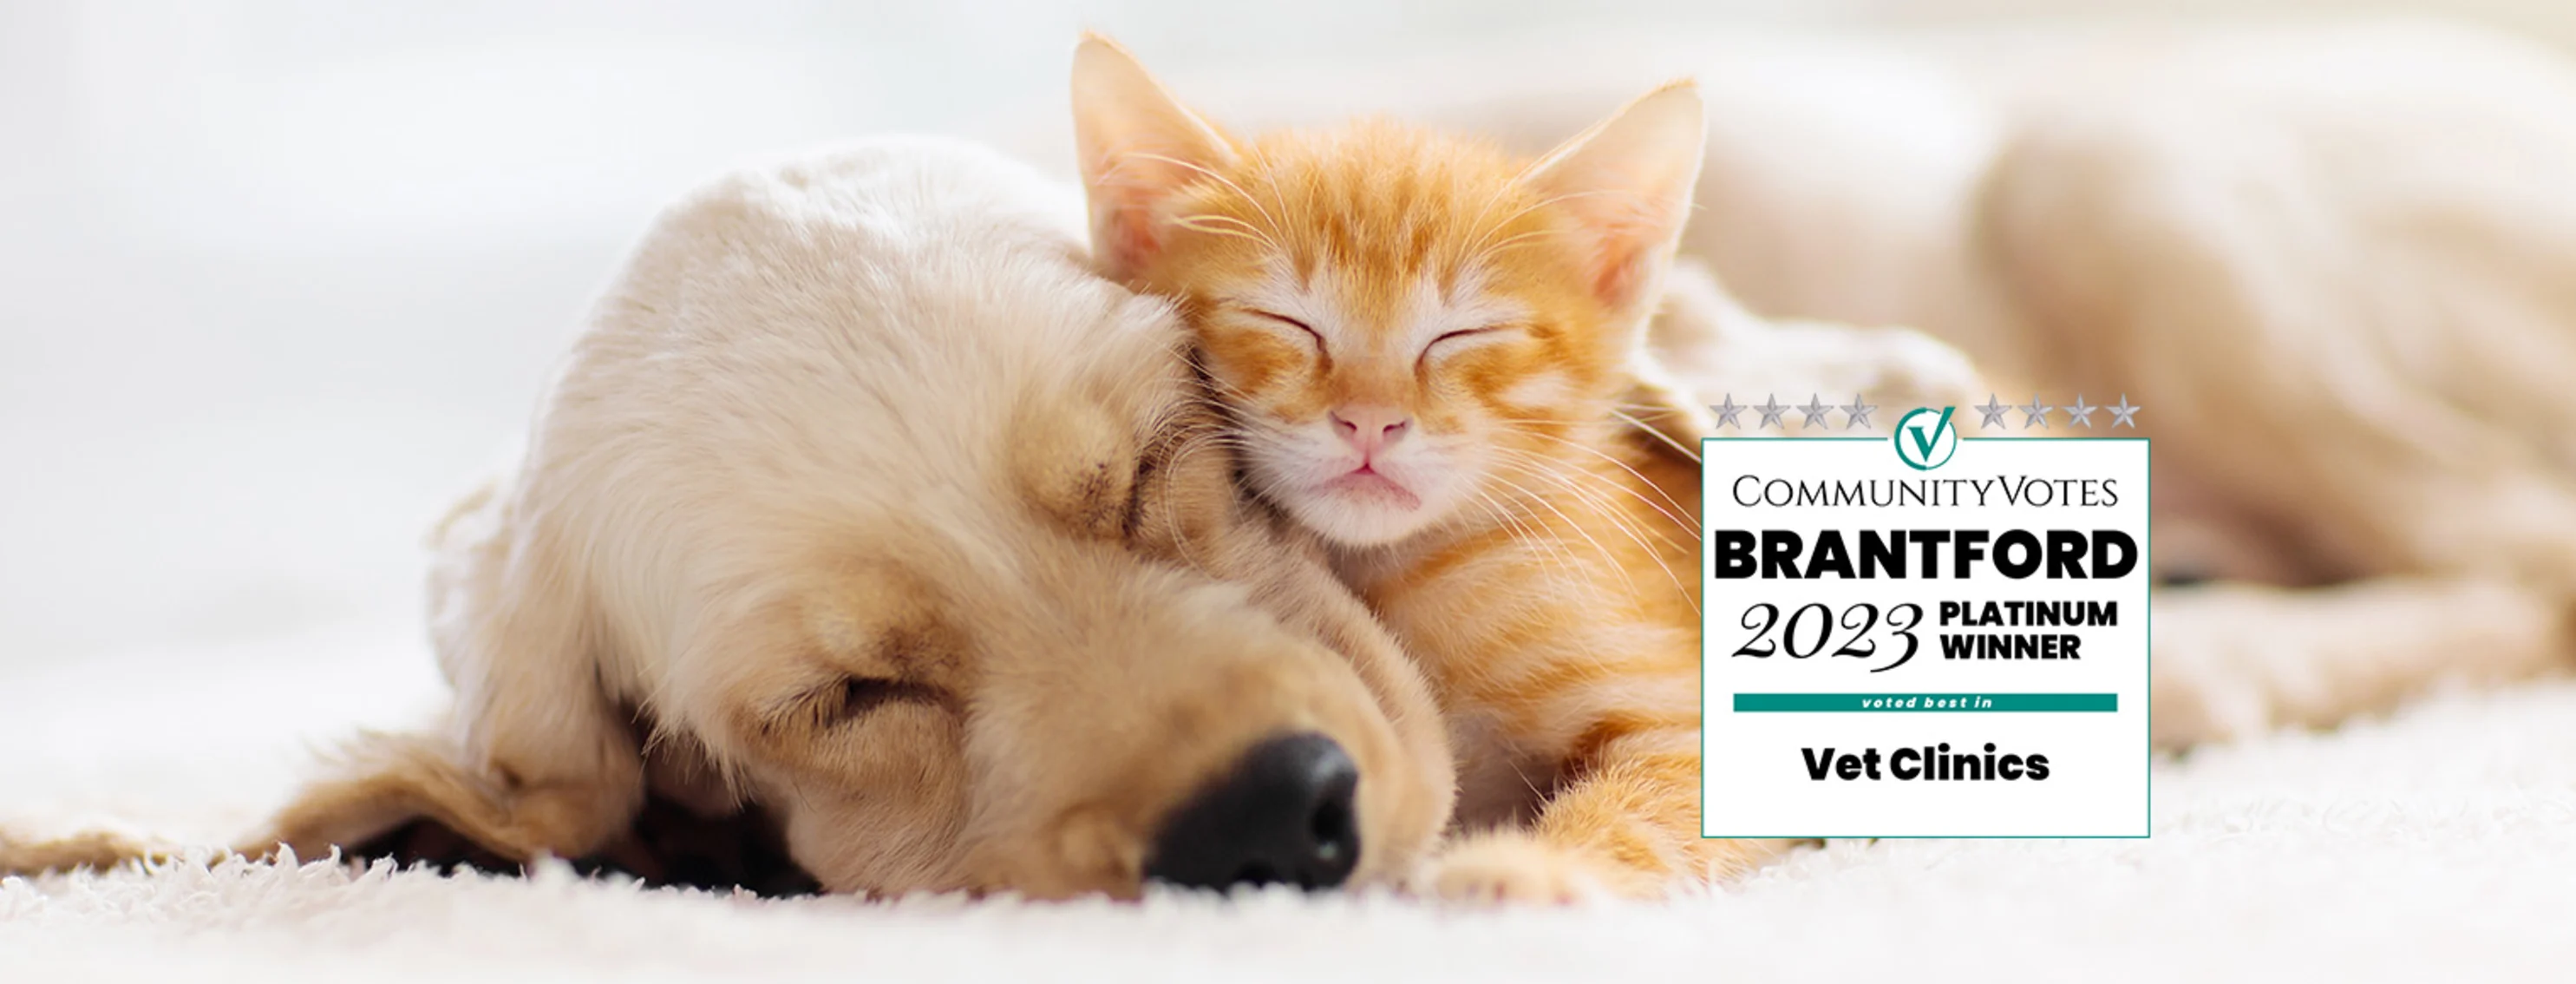 Puppy with Kitten snuggle at home w/ Brantford 2023 Platinum Winner Logo